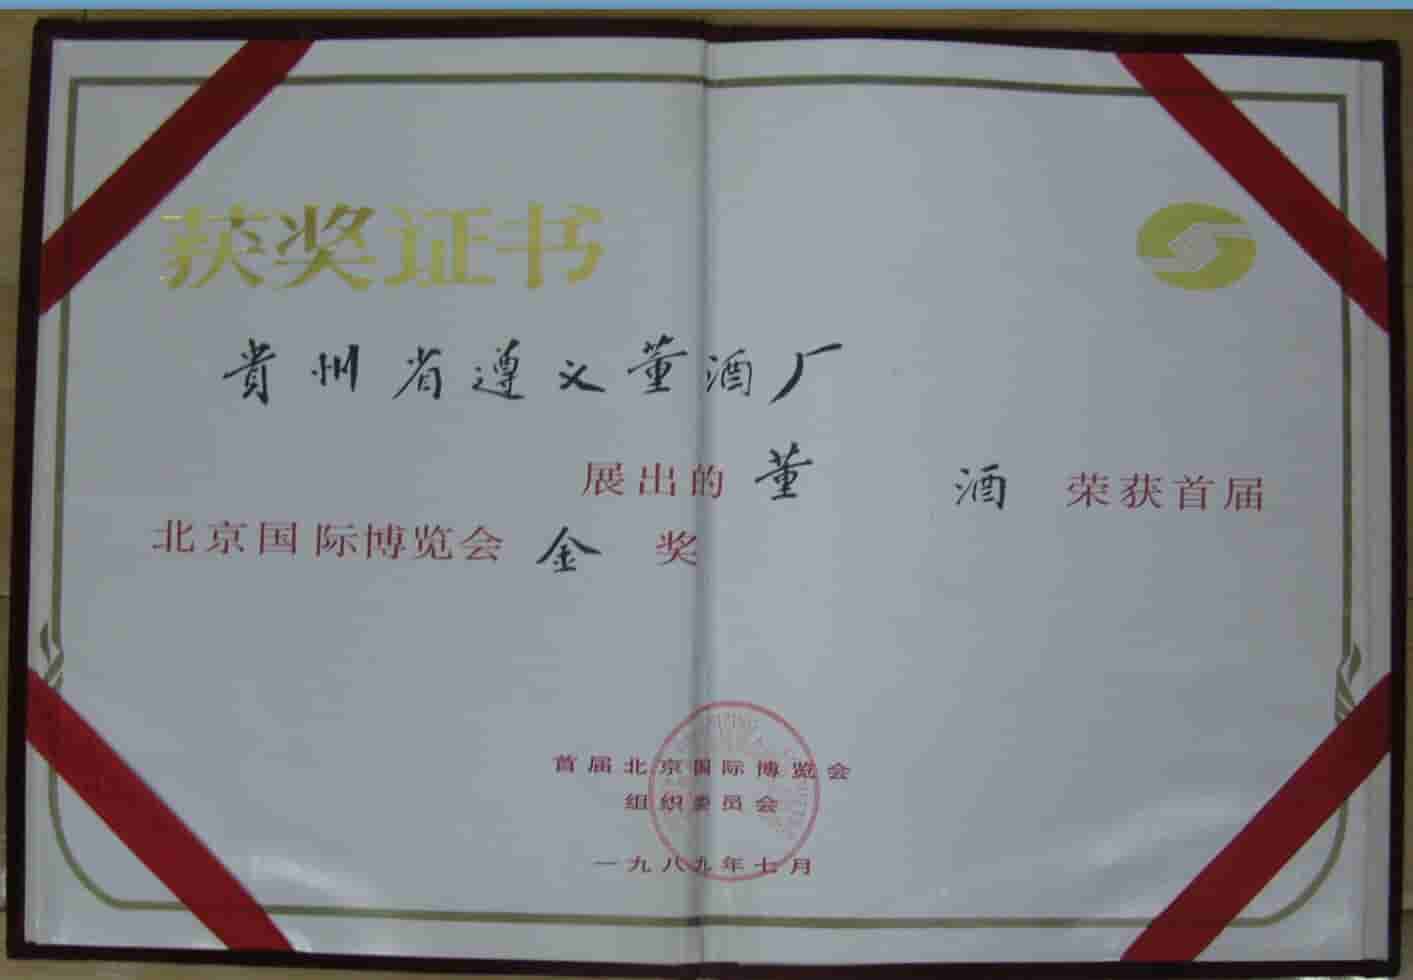 1989年董酒获得北京国际博览会金奖 (1)